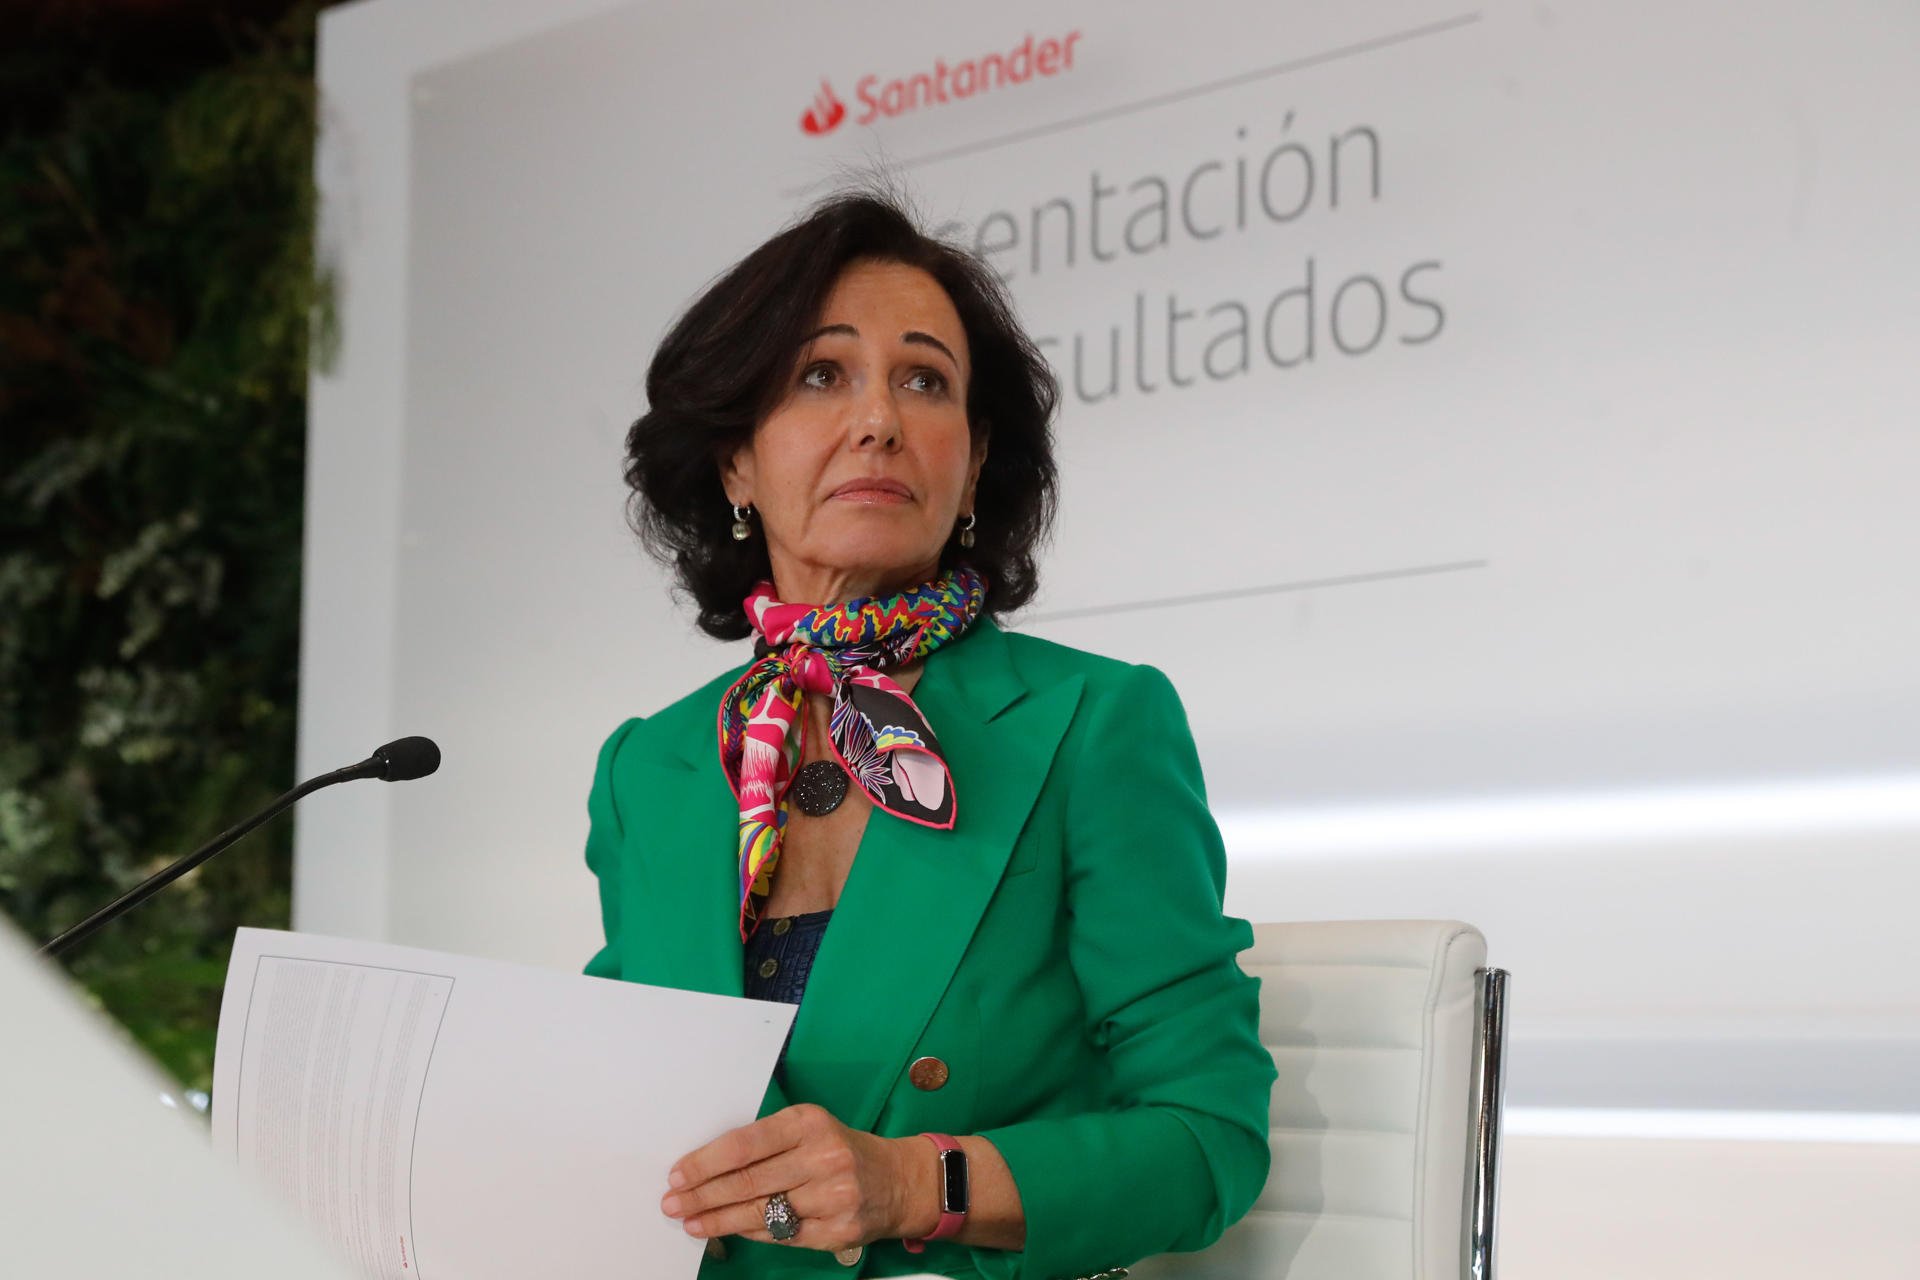 BBVA capta un 60% más de clientes que Santander en el último año